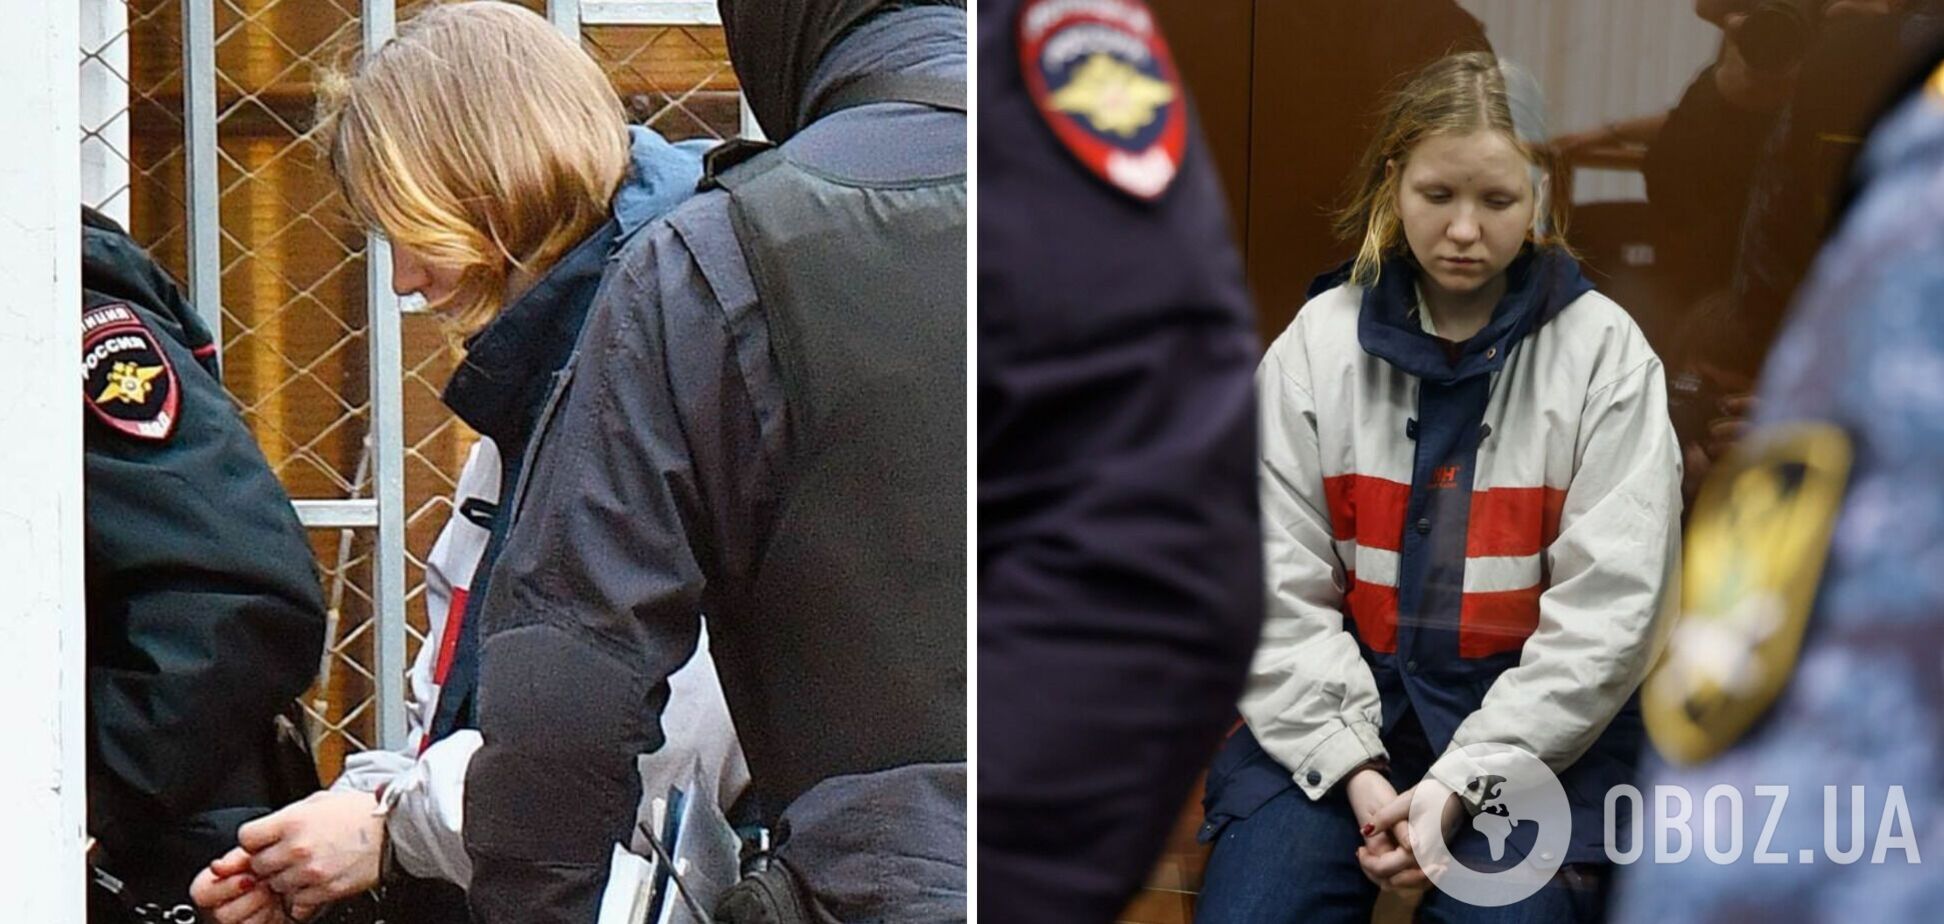 Суд в Москве отправил в СИЗО девушку, вручившую Татарскому статуэтку со взрывчаткой